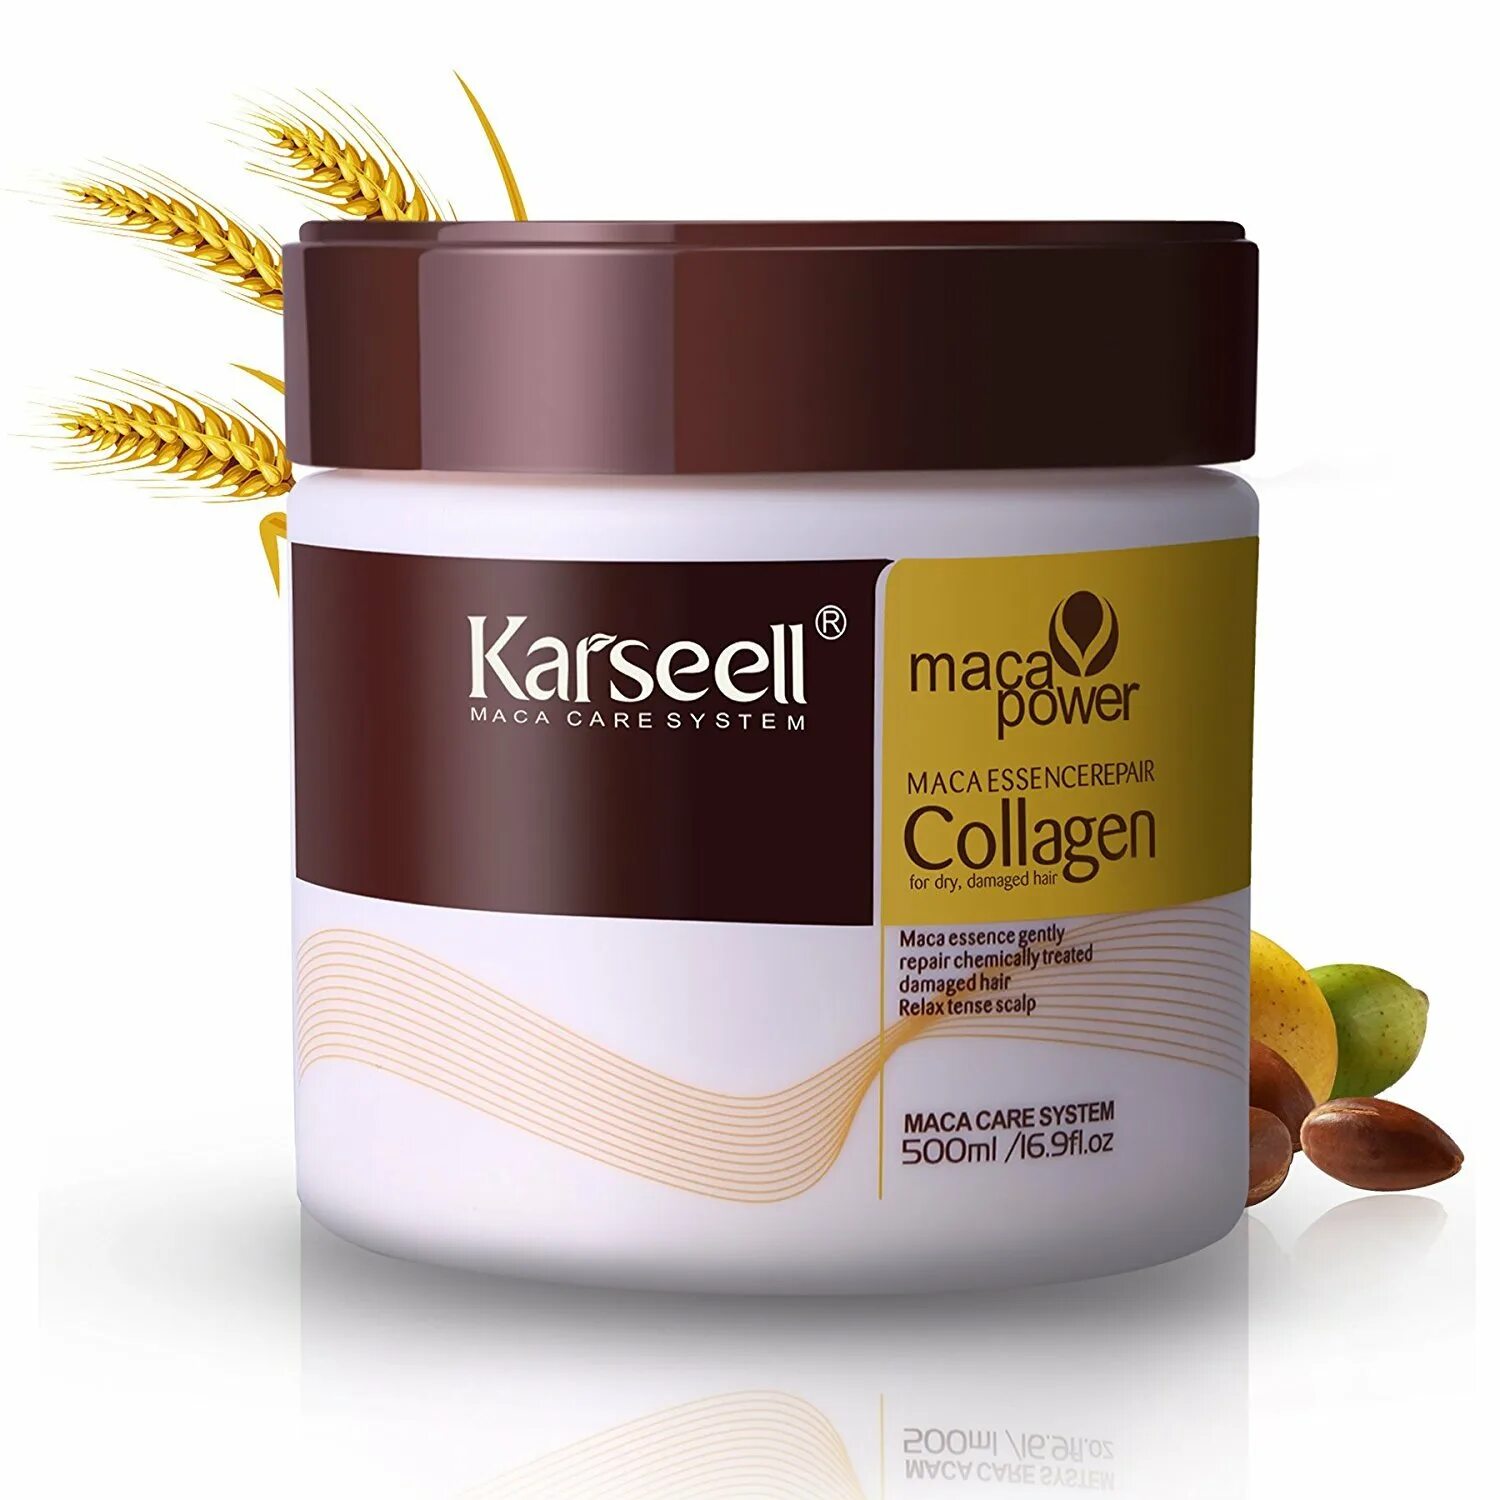 Karseell Collagen маска. Maca Power Collagen для волос. Collagen treatment Argan для волос. Karseell Collagen для волос. Маска для волос дерево